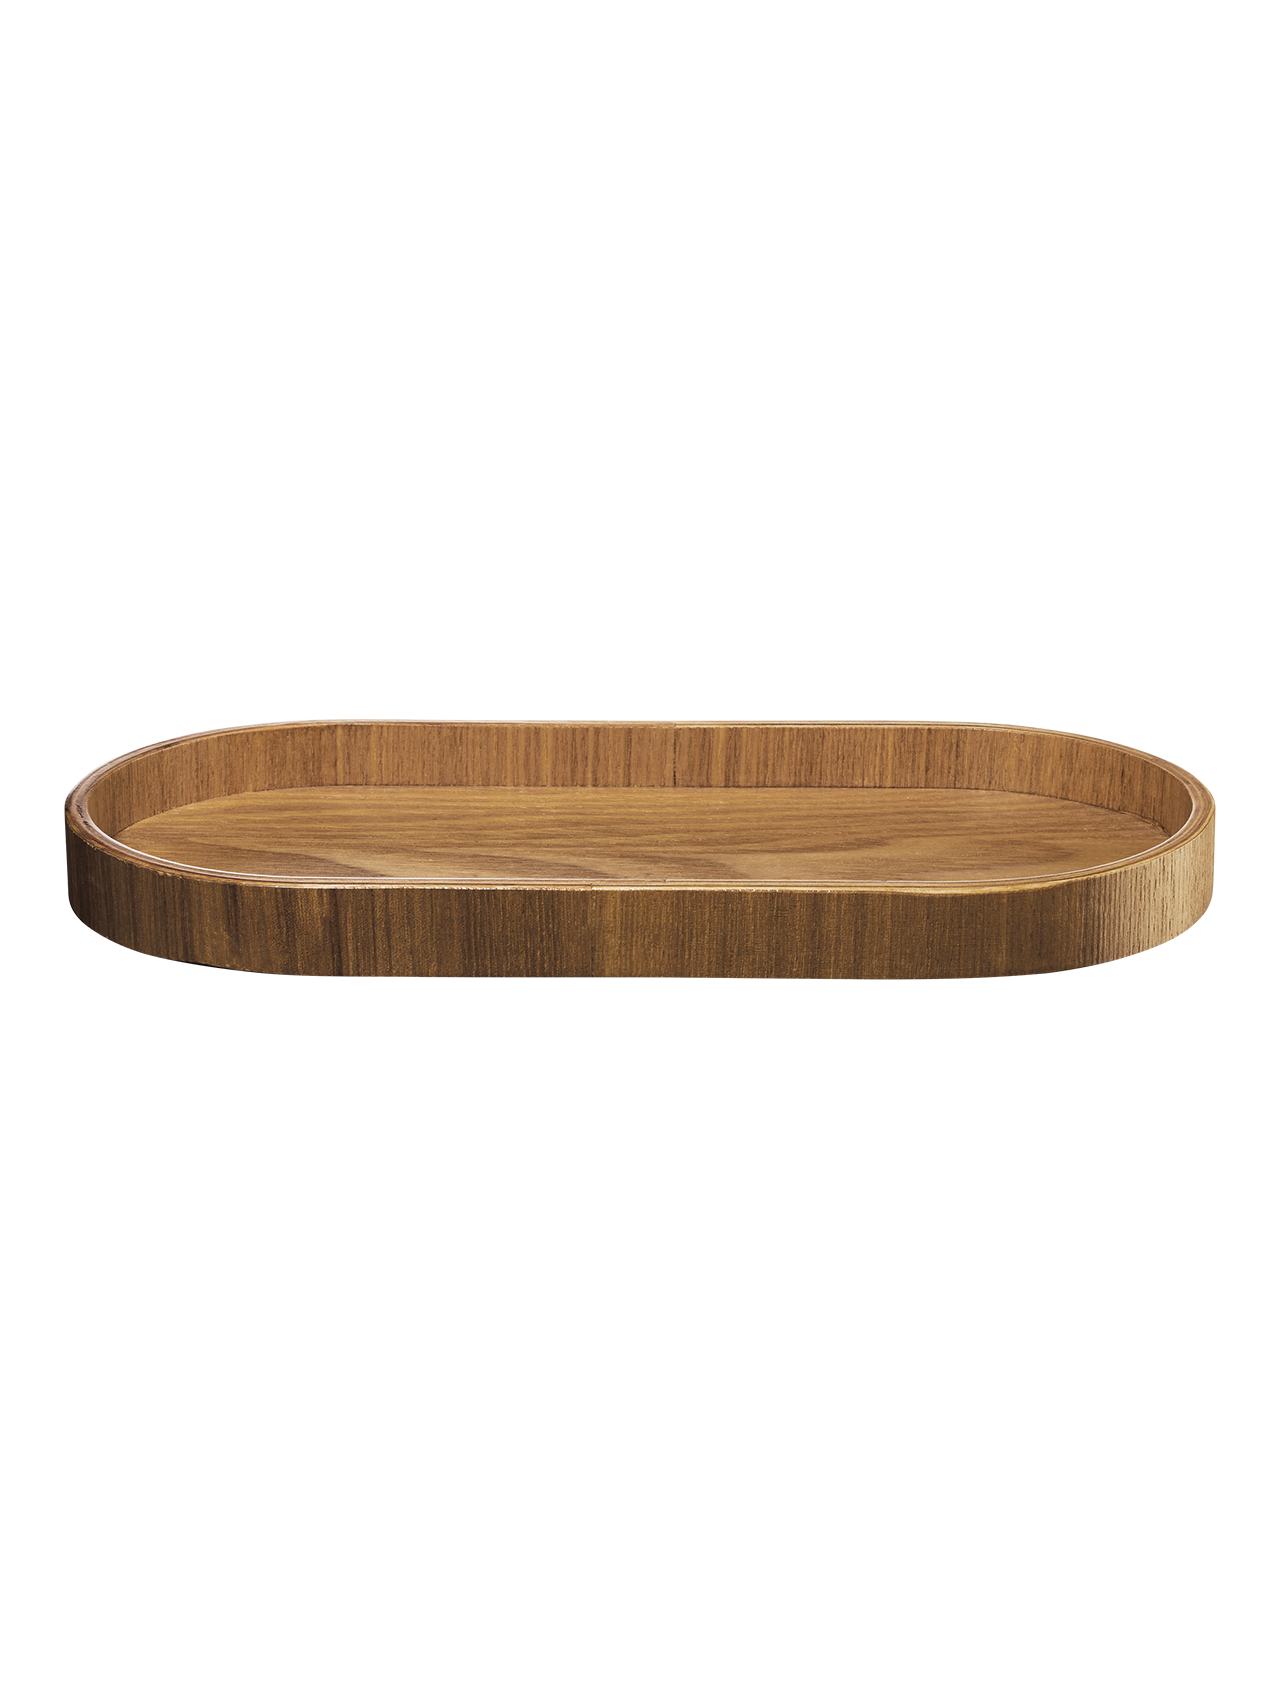 ASA wood Holztablett oval Weidenholz 35,5 x 16,5 cm H. 2,5 cm